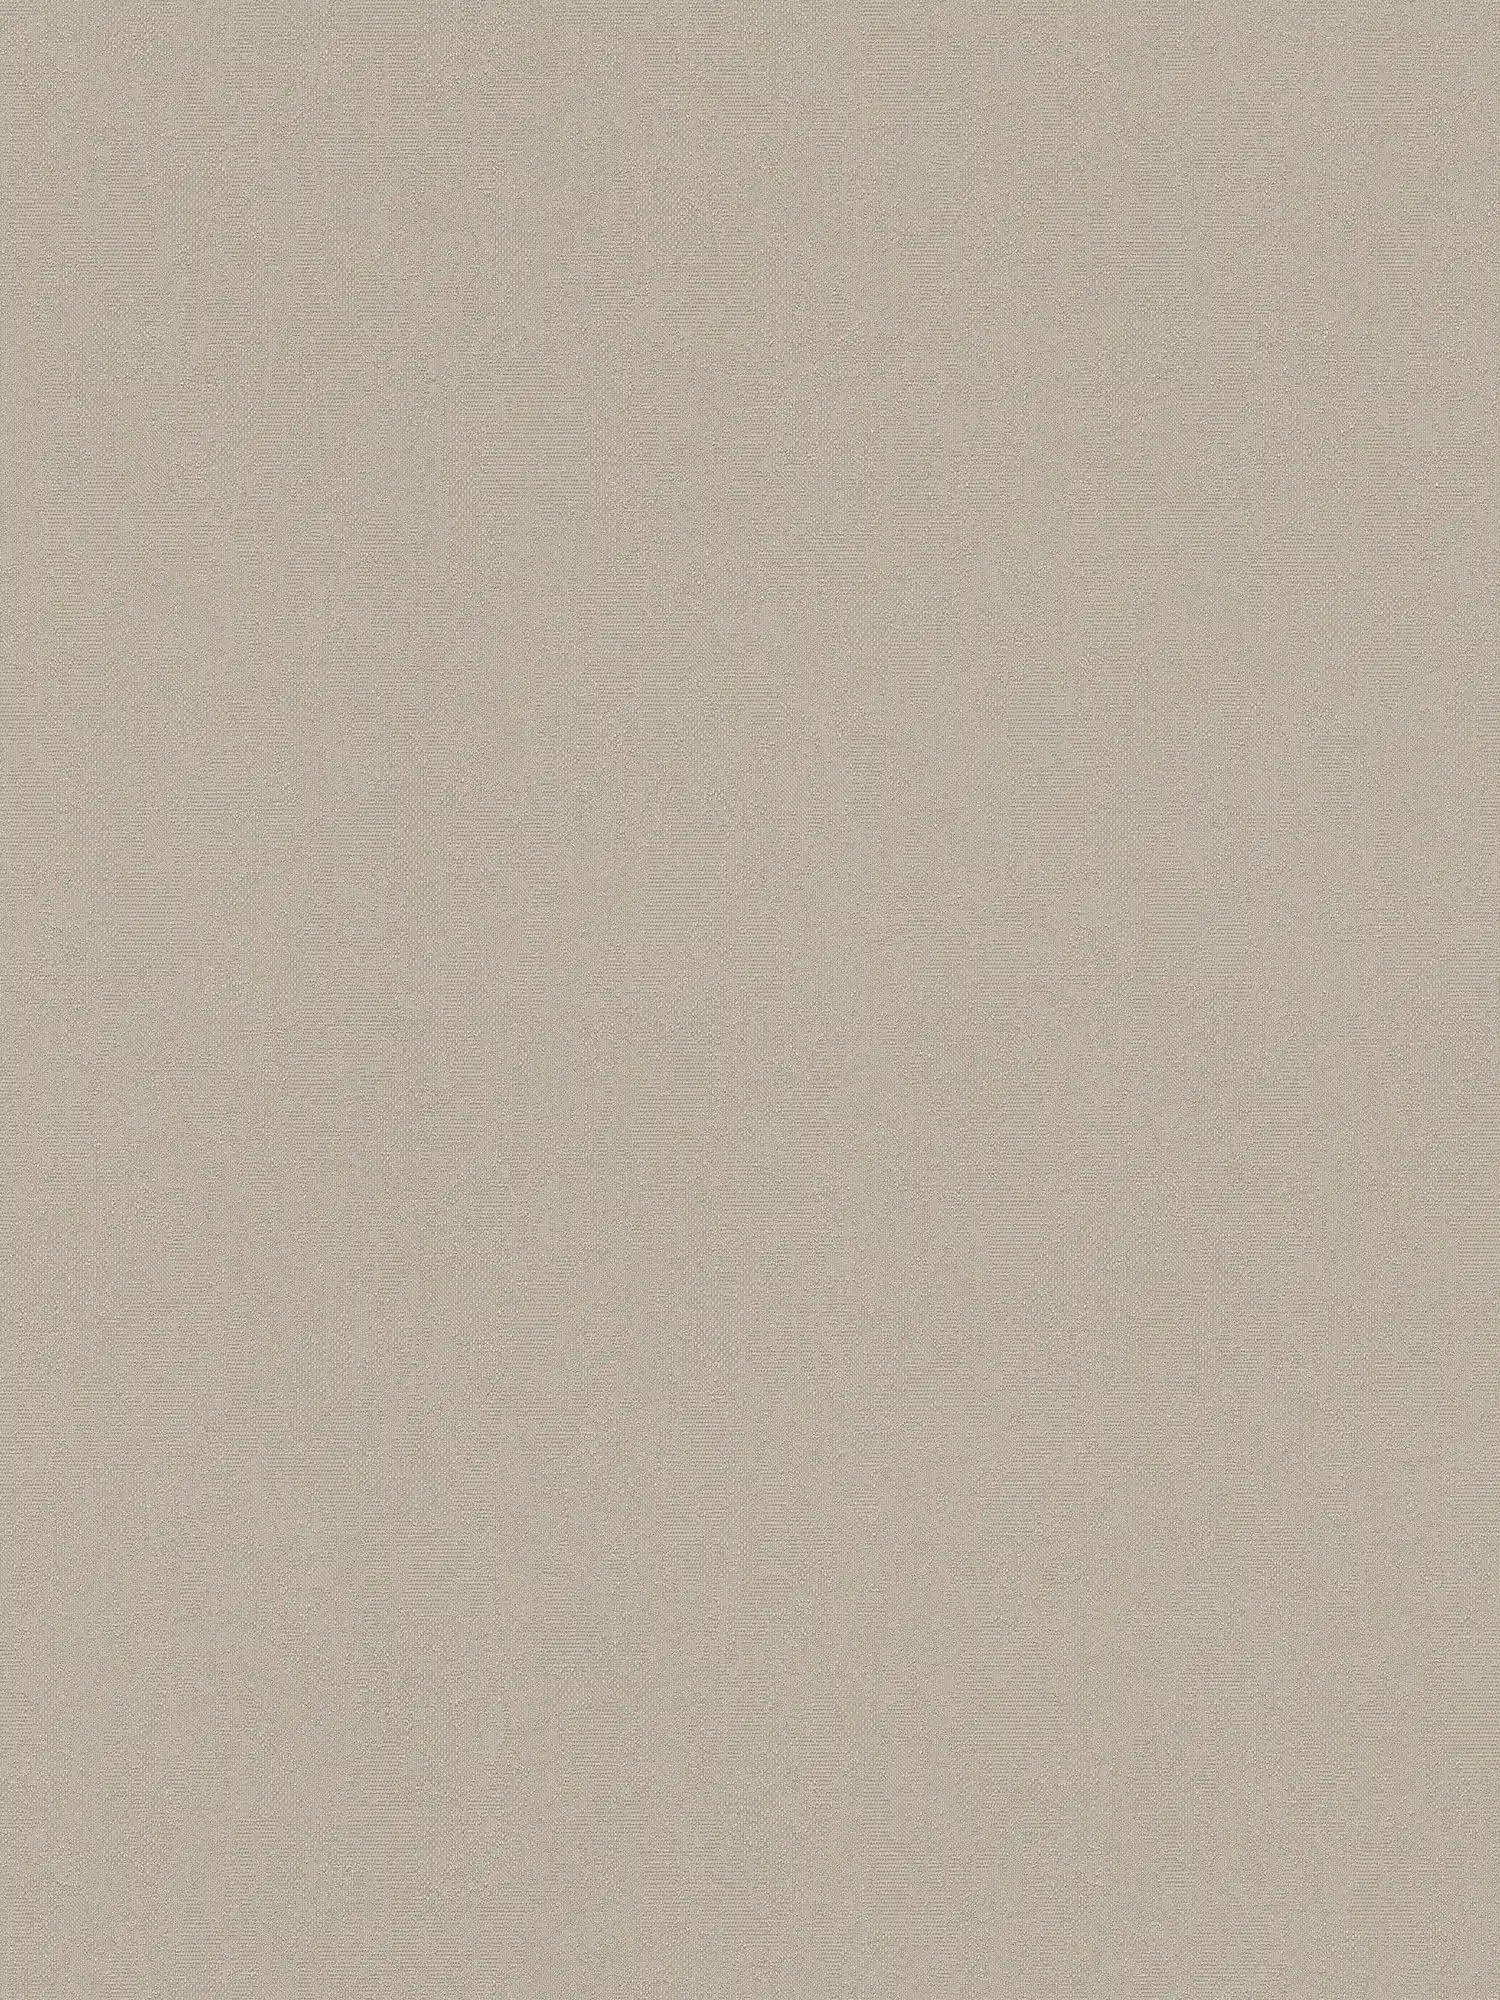 Papel pintado de unidad neutra gris-beige con superficie texturizada
